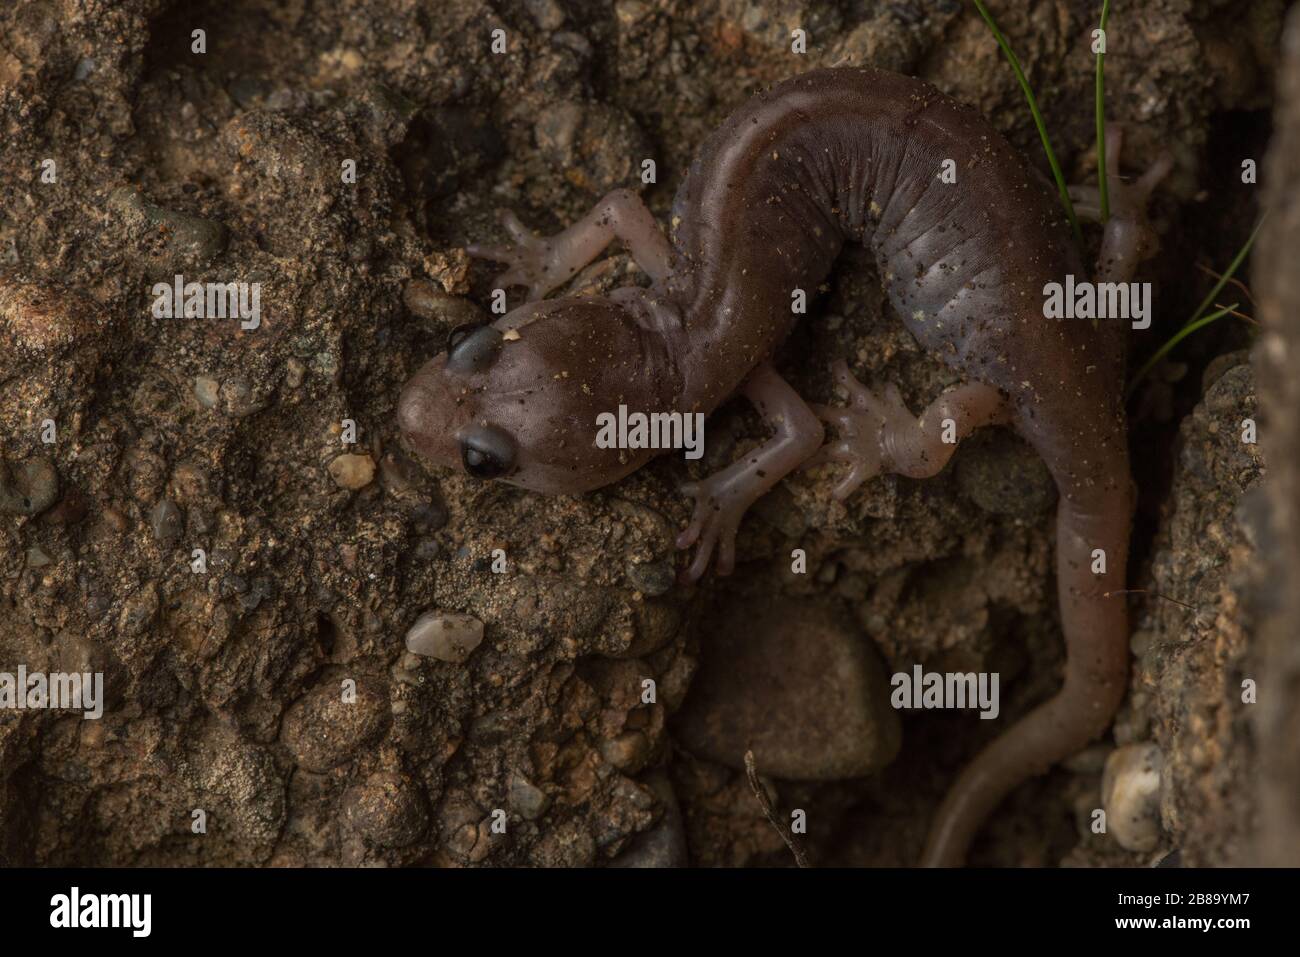 Une salamandre arboricole (Anéides lugubris) de la région de la baie de Californie. Banque D'Images